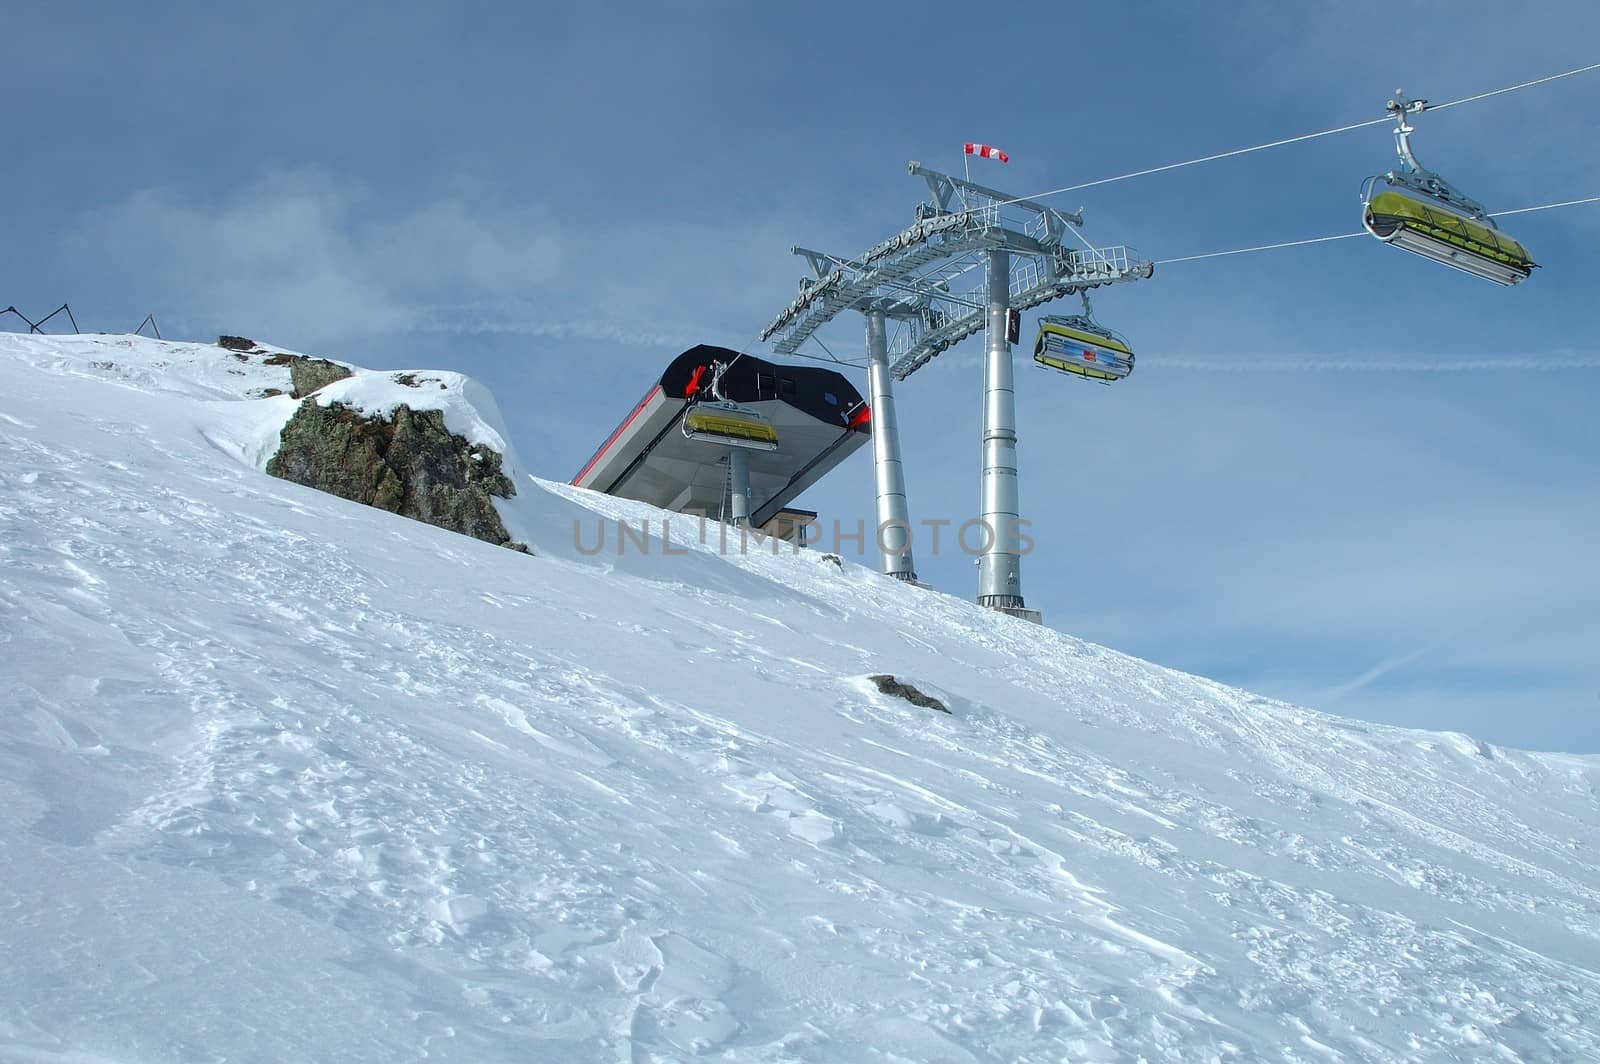 Ski lift end station nearby Kaltenbach in Zillertal valley in Austria